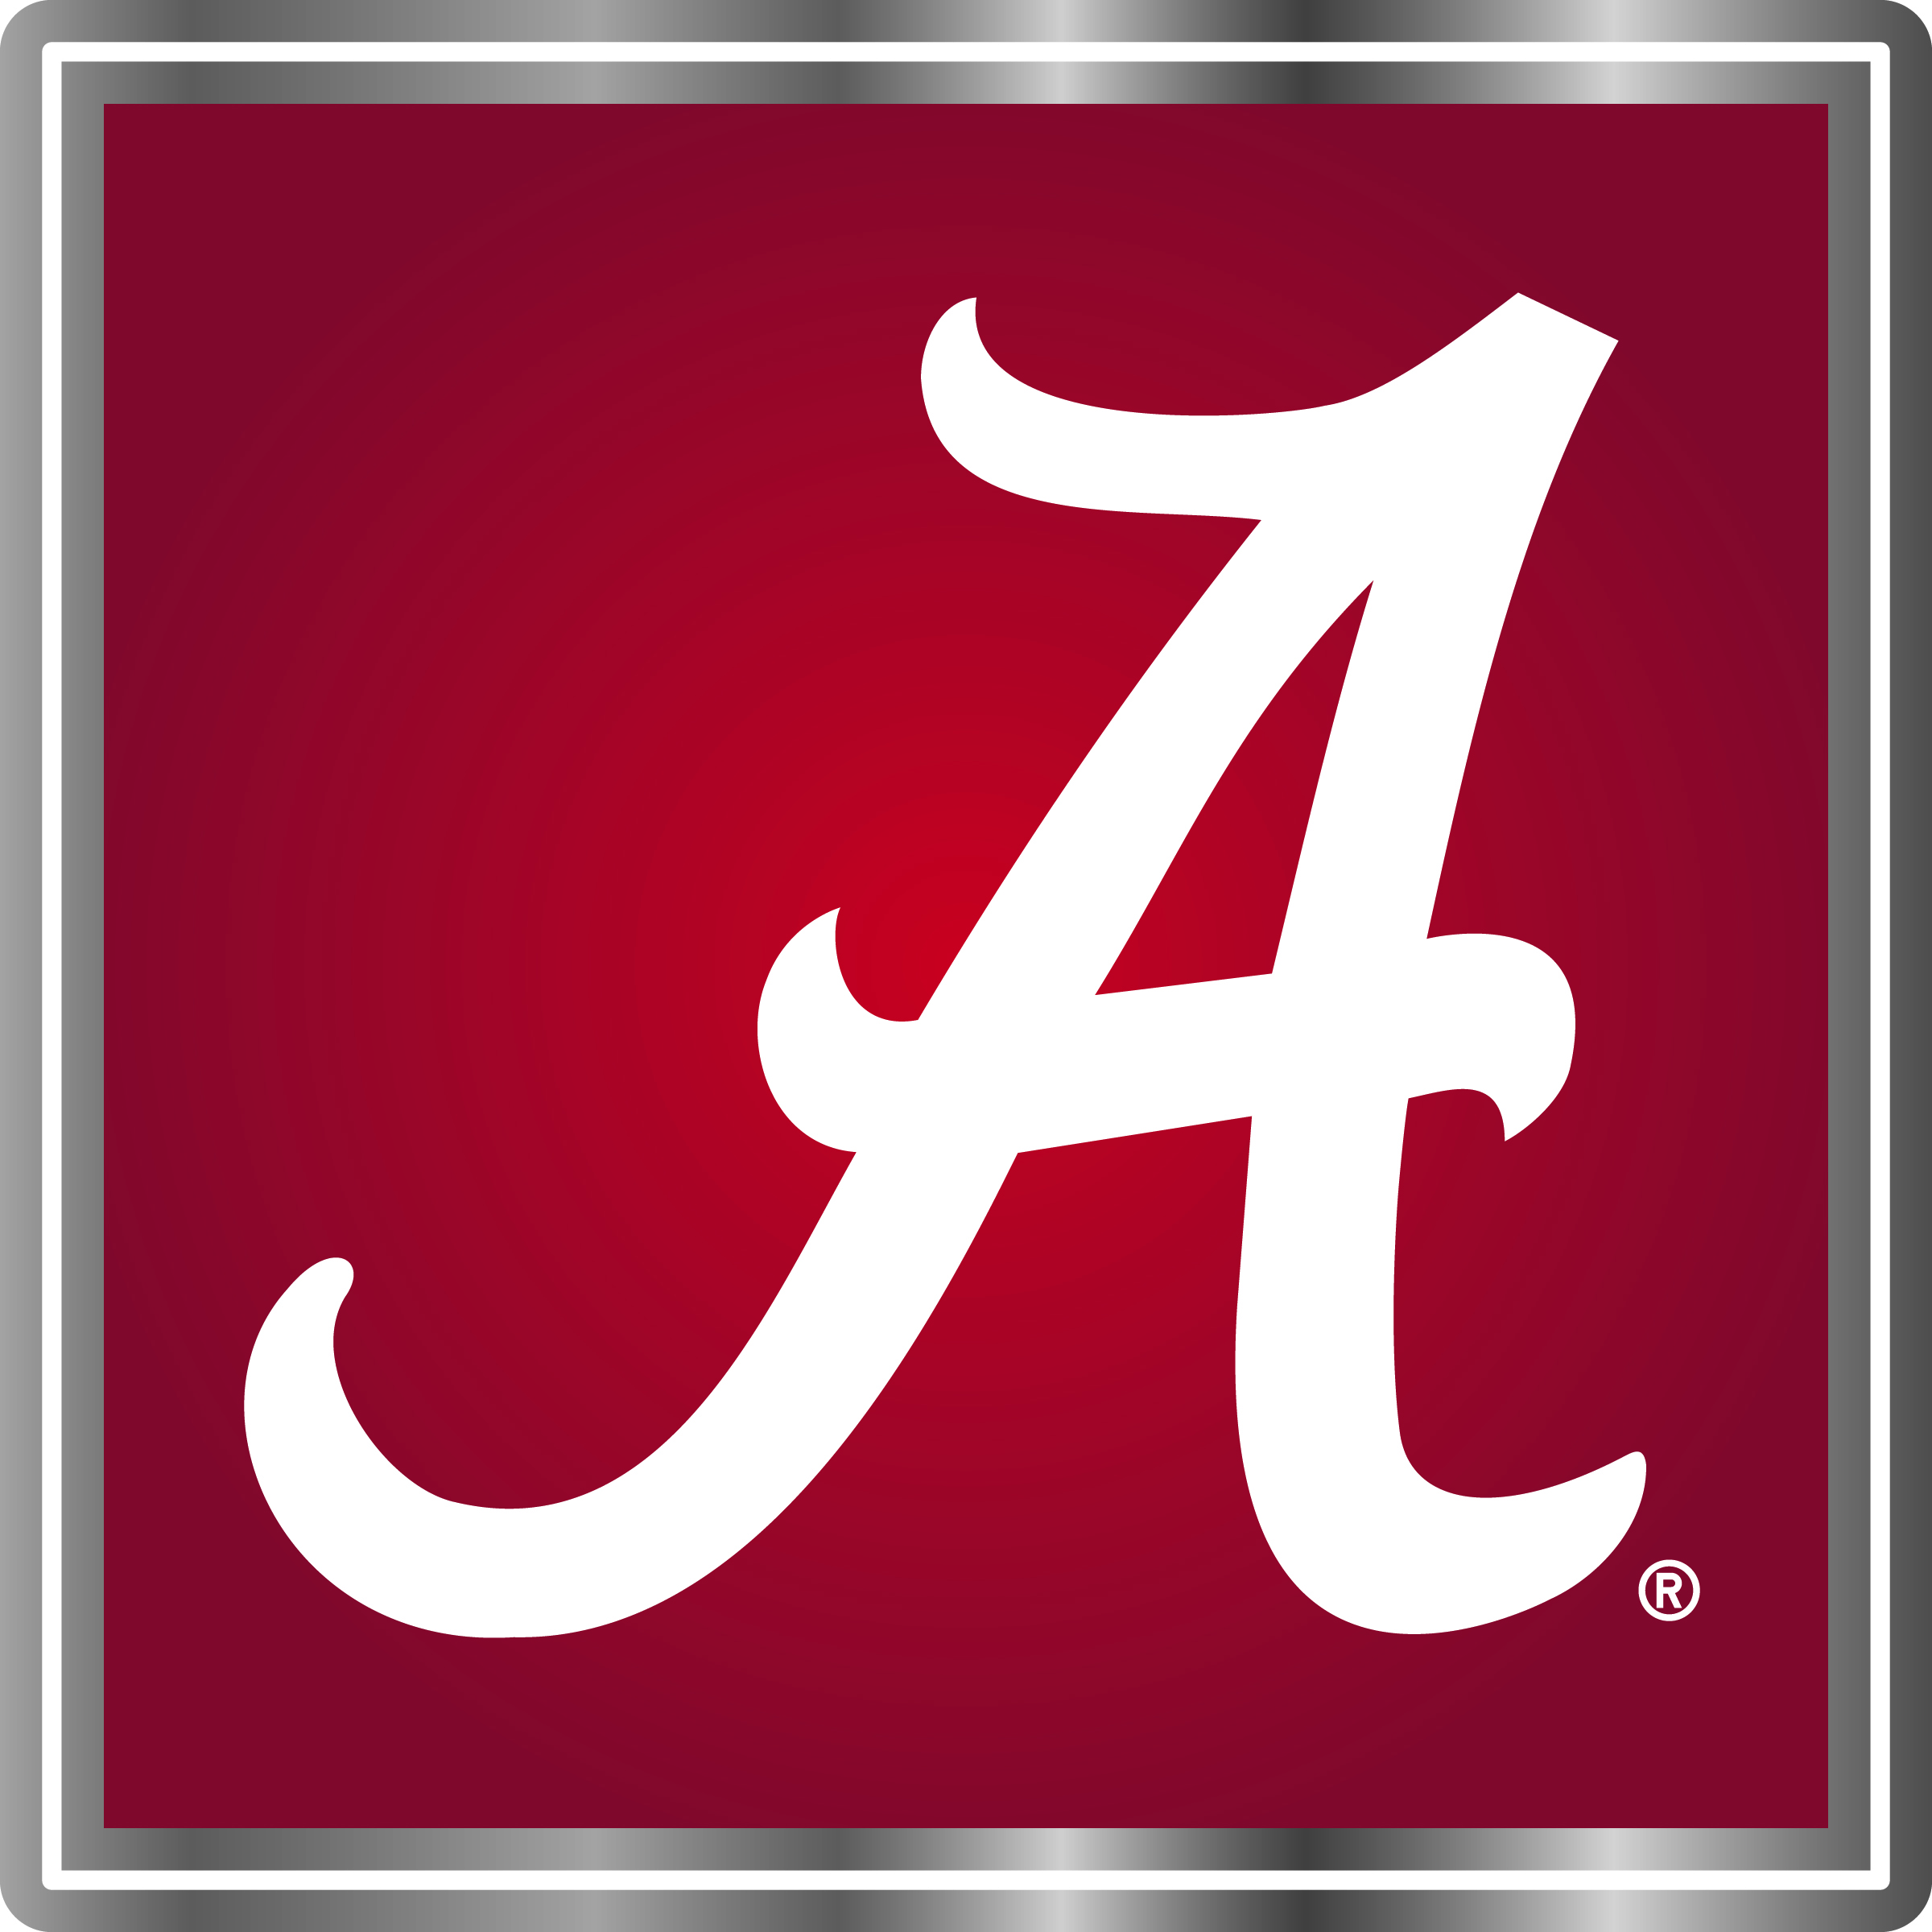 University of Alabama Capstone A logo.